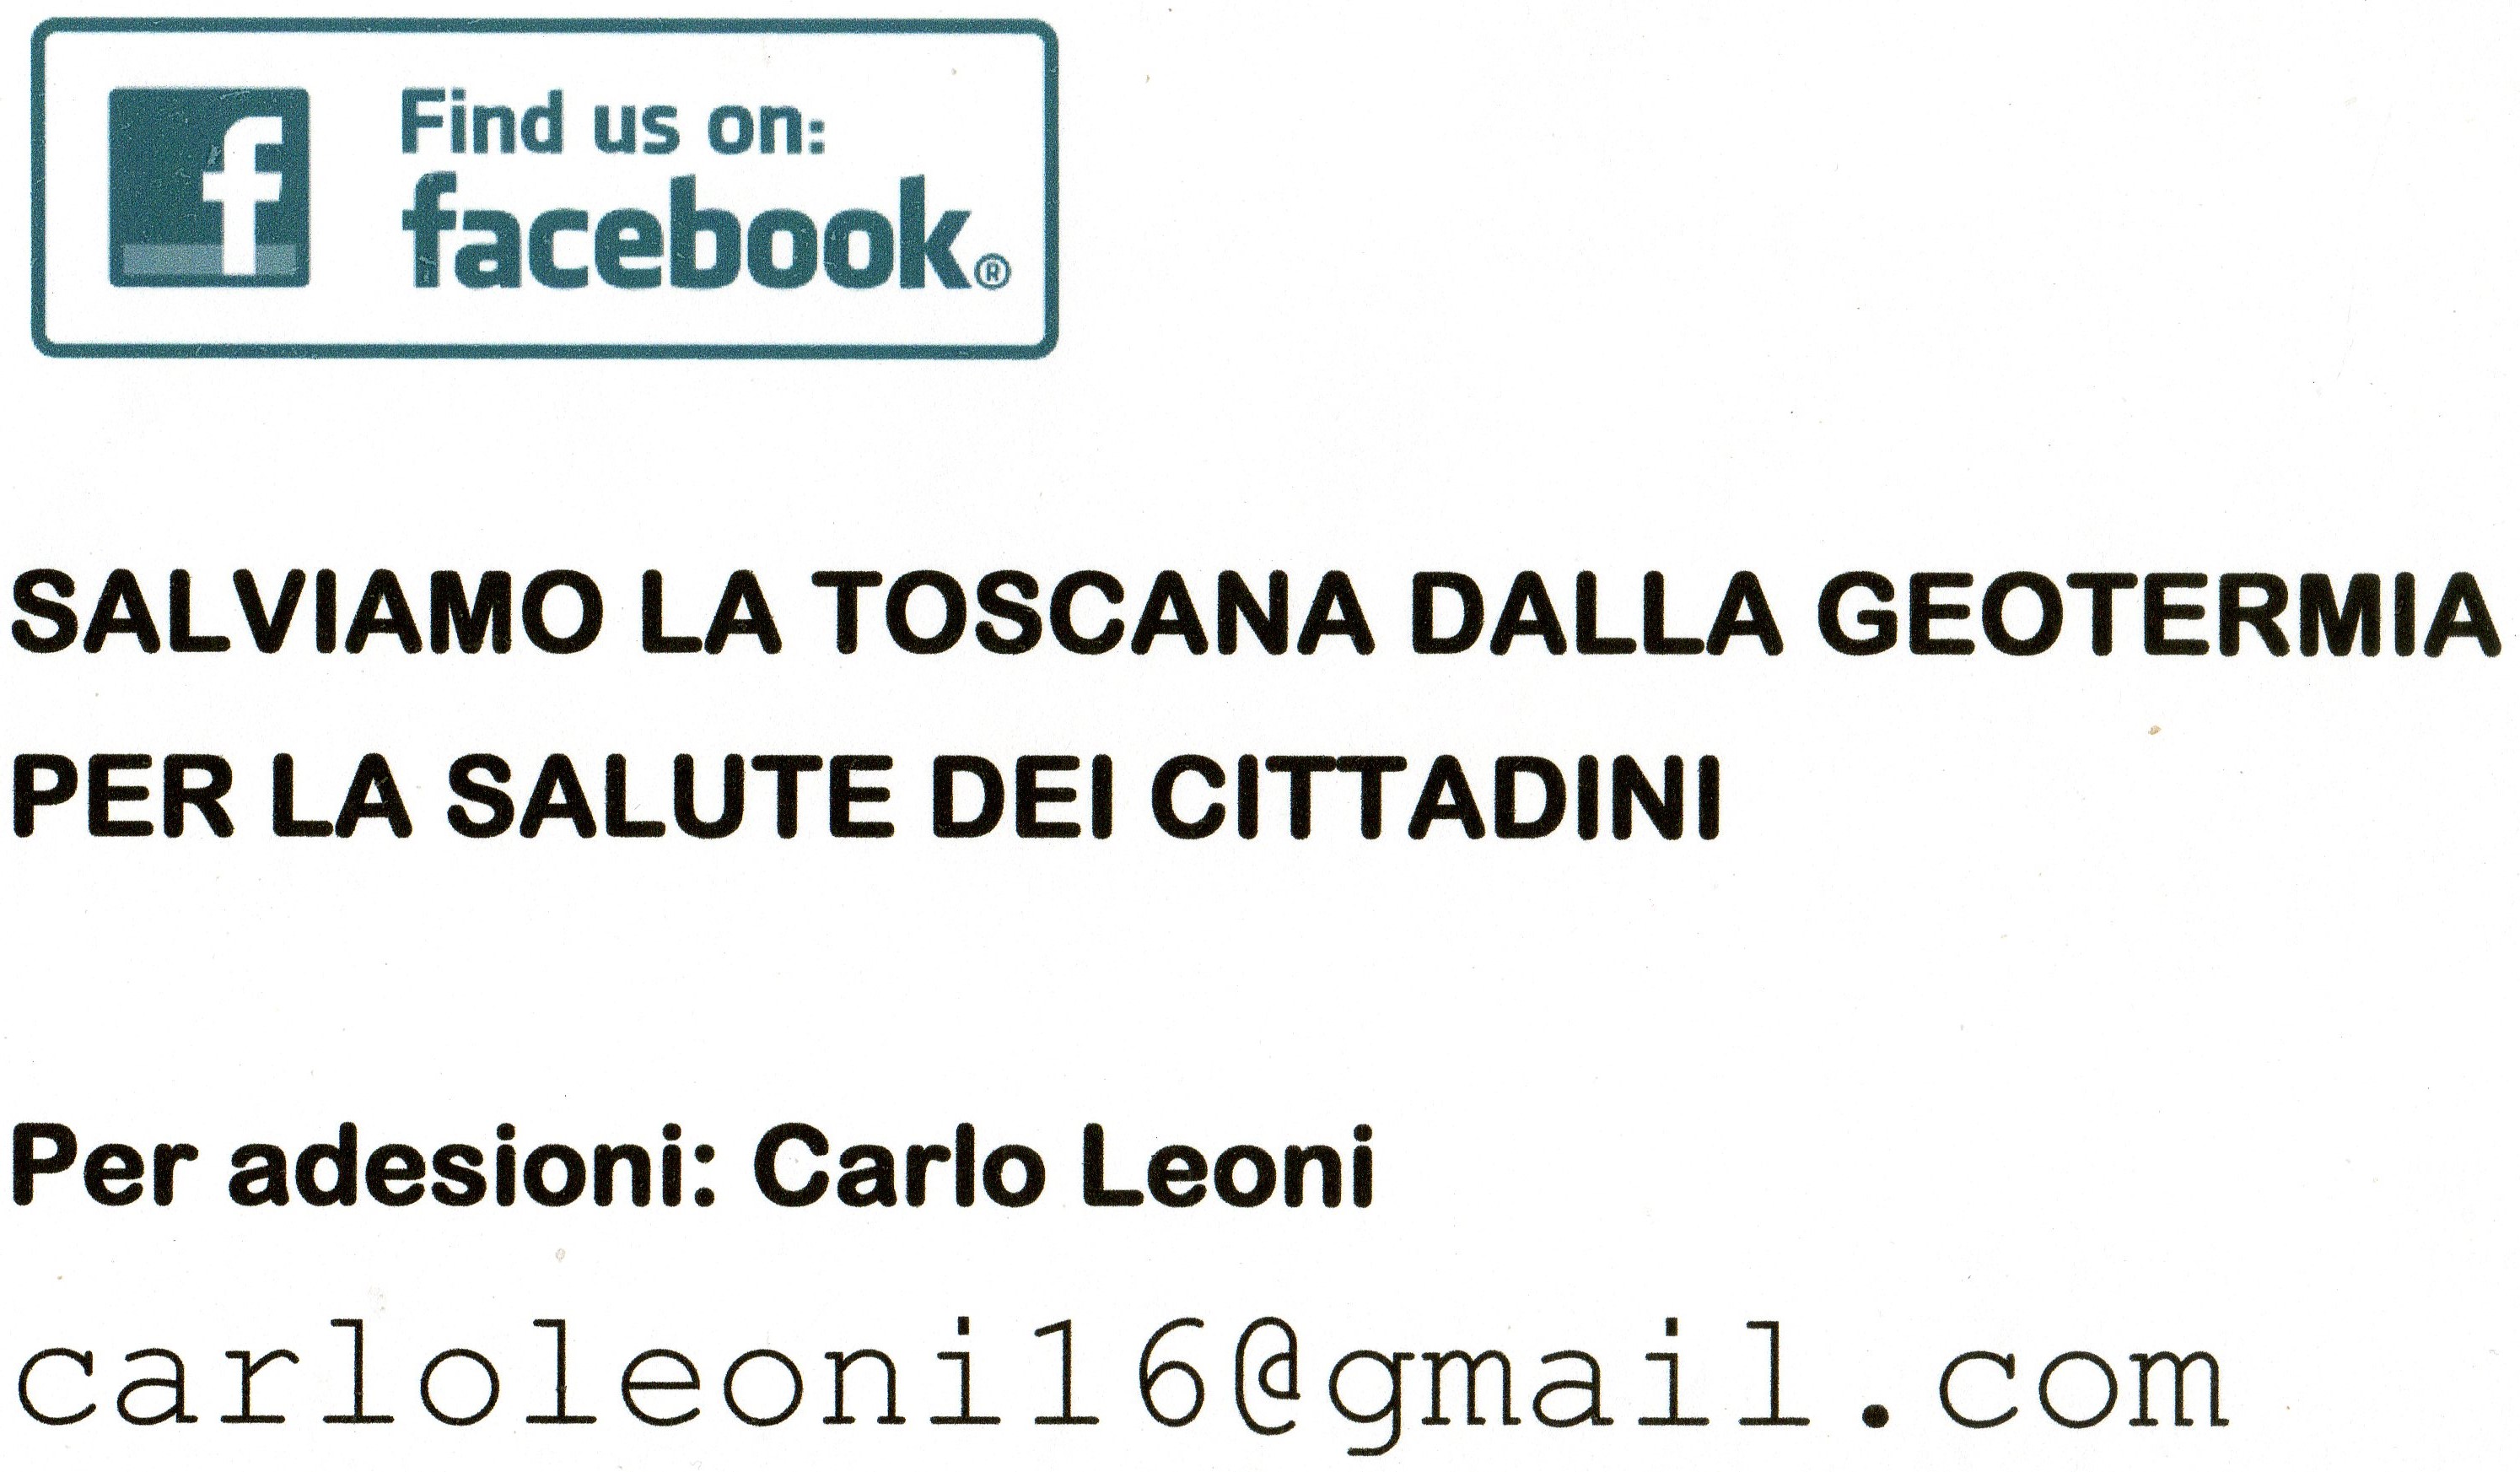 “Salviamo la Toscana dalla geotermia per la salute dei cittadini”